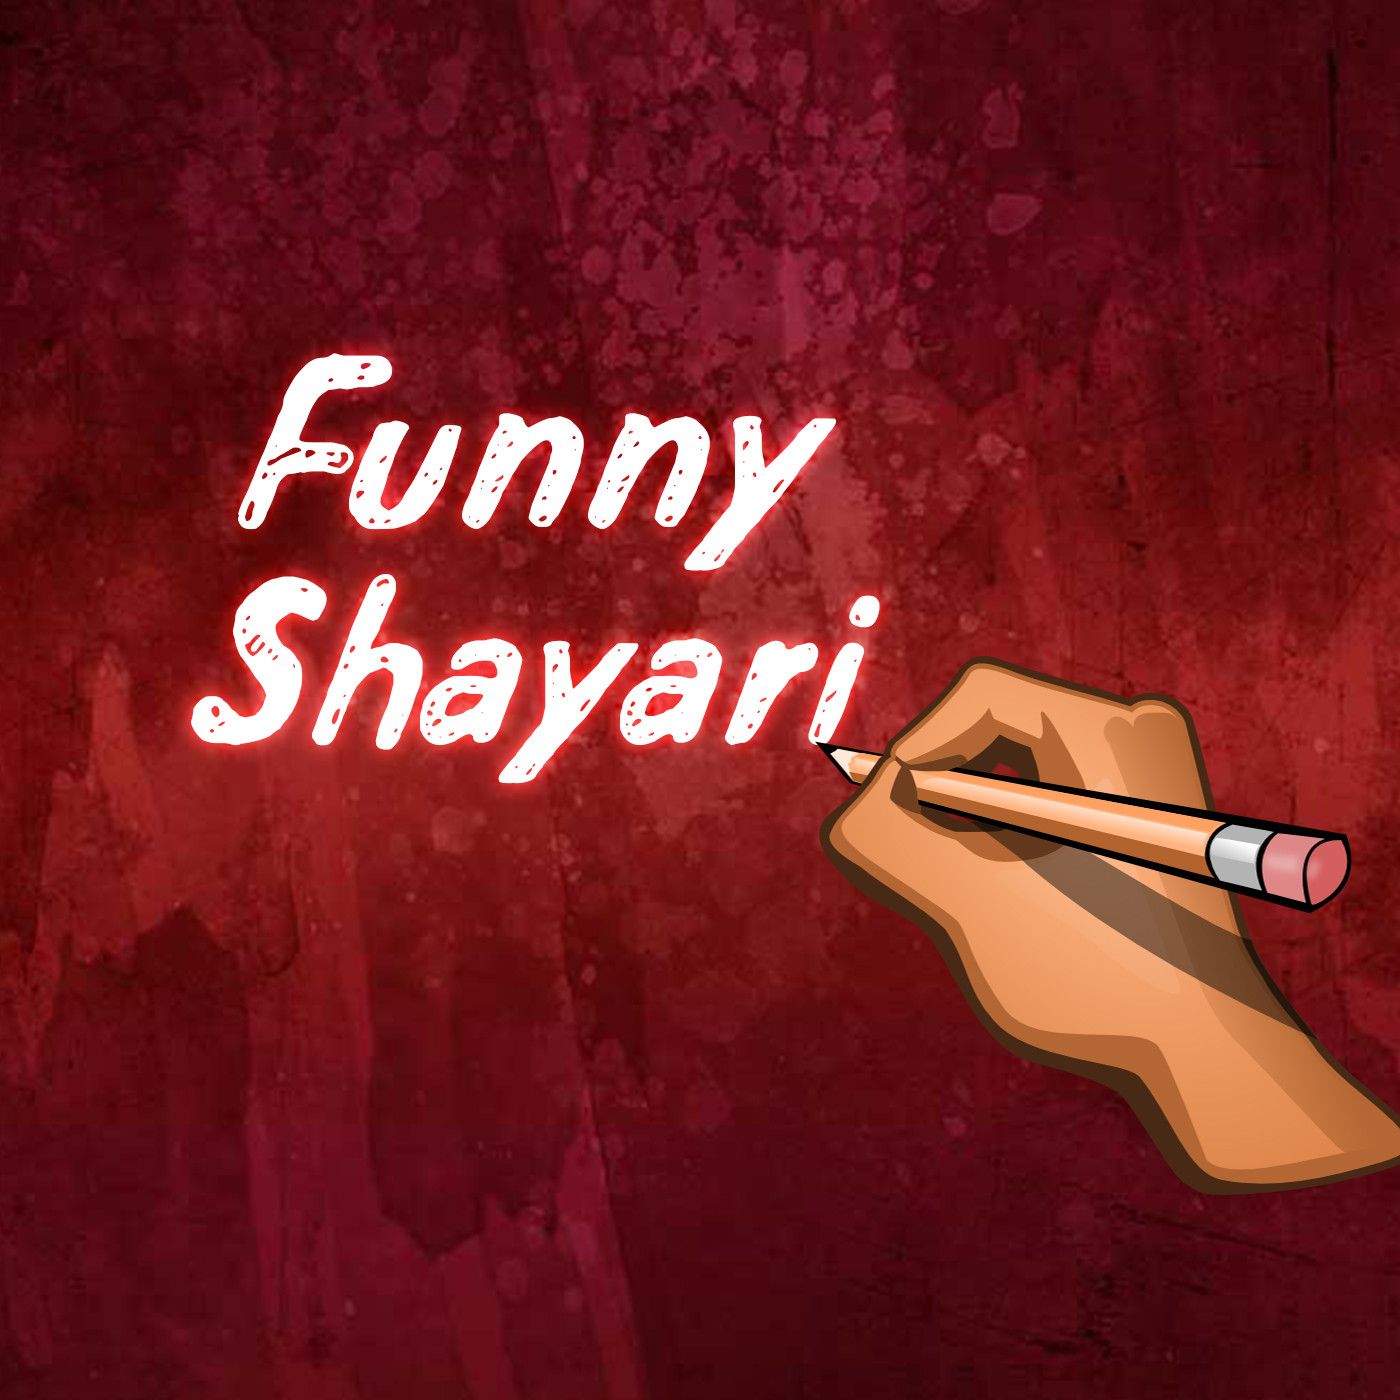 100+ झूठे प्यार पर शायरी, कोट्स व स्टेटस | Fake Relationship Quotes, Status  And Shayari In Hindi